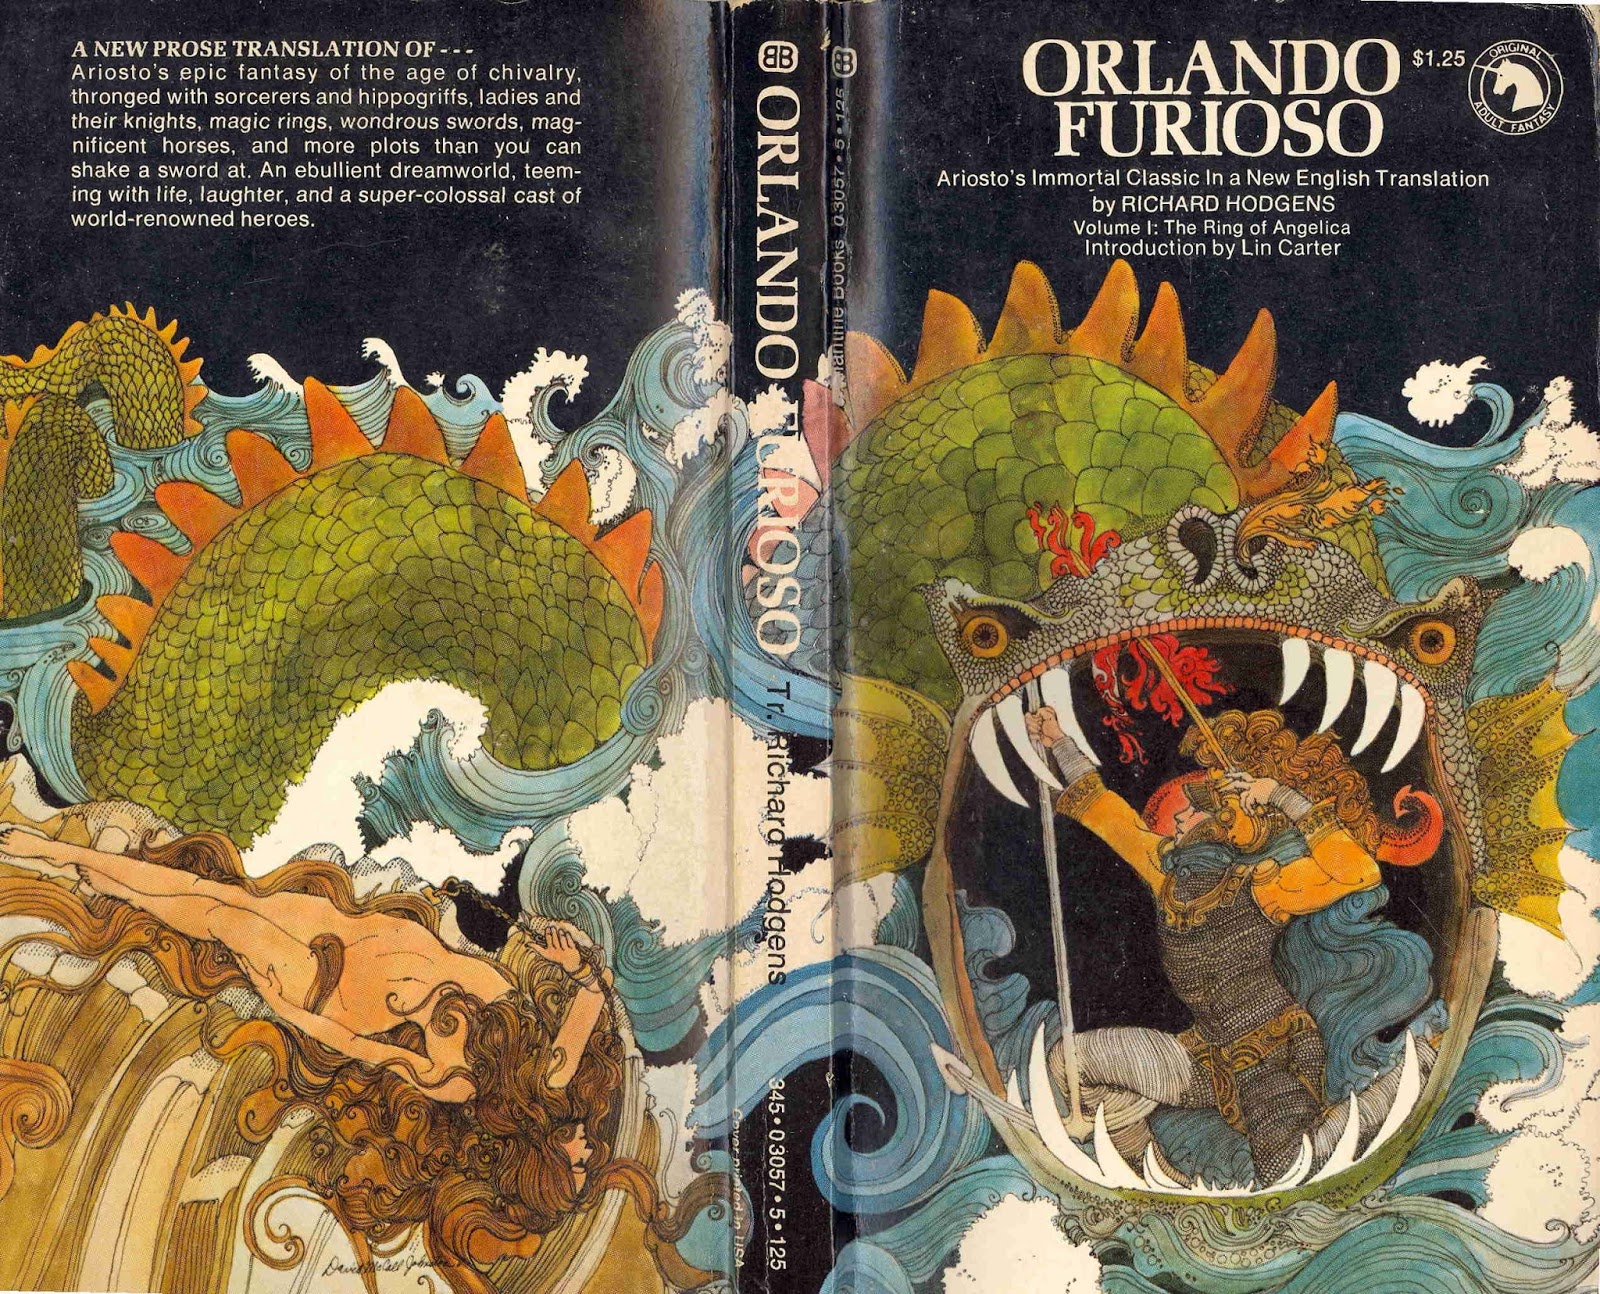 Wormwoodiana: 'Orlando Furioso' retold by Richard Hodgens